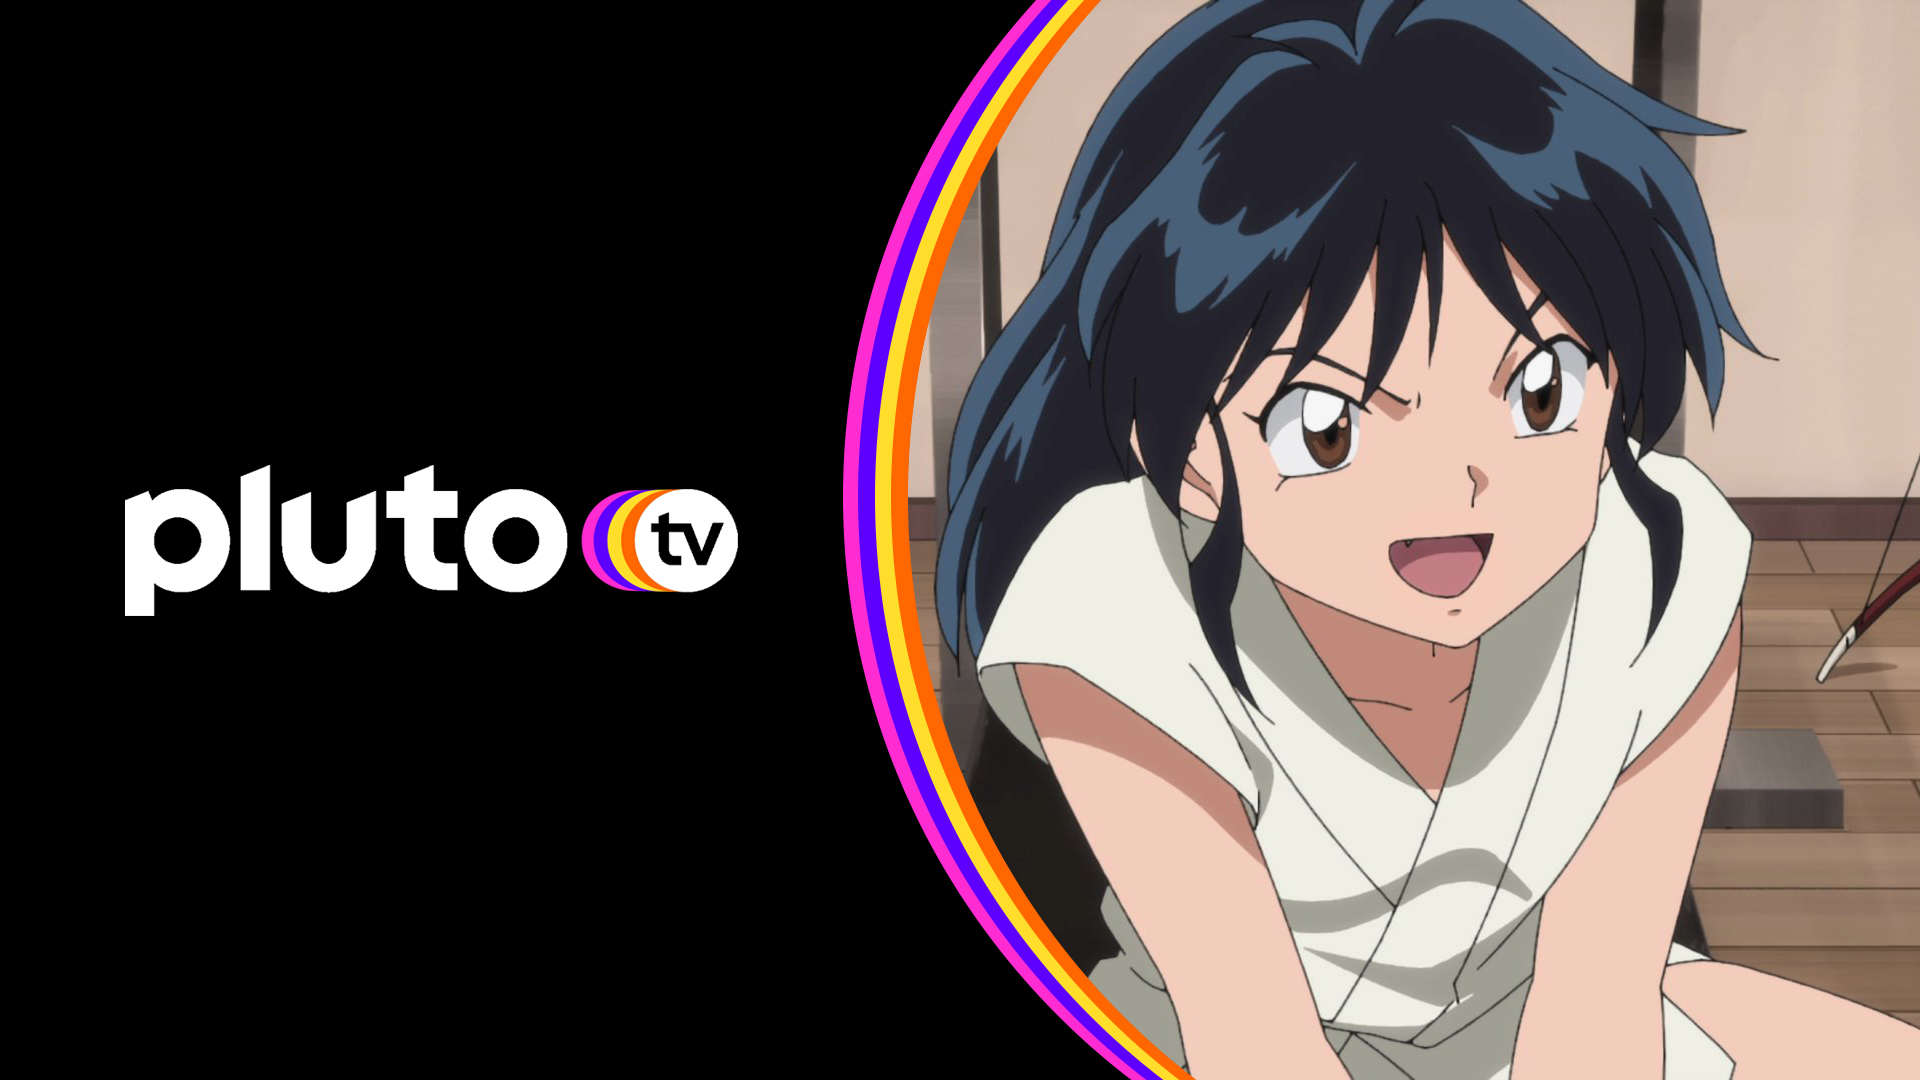 Pluto TV estreia o anime de sucesso Death Note